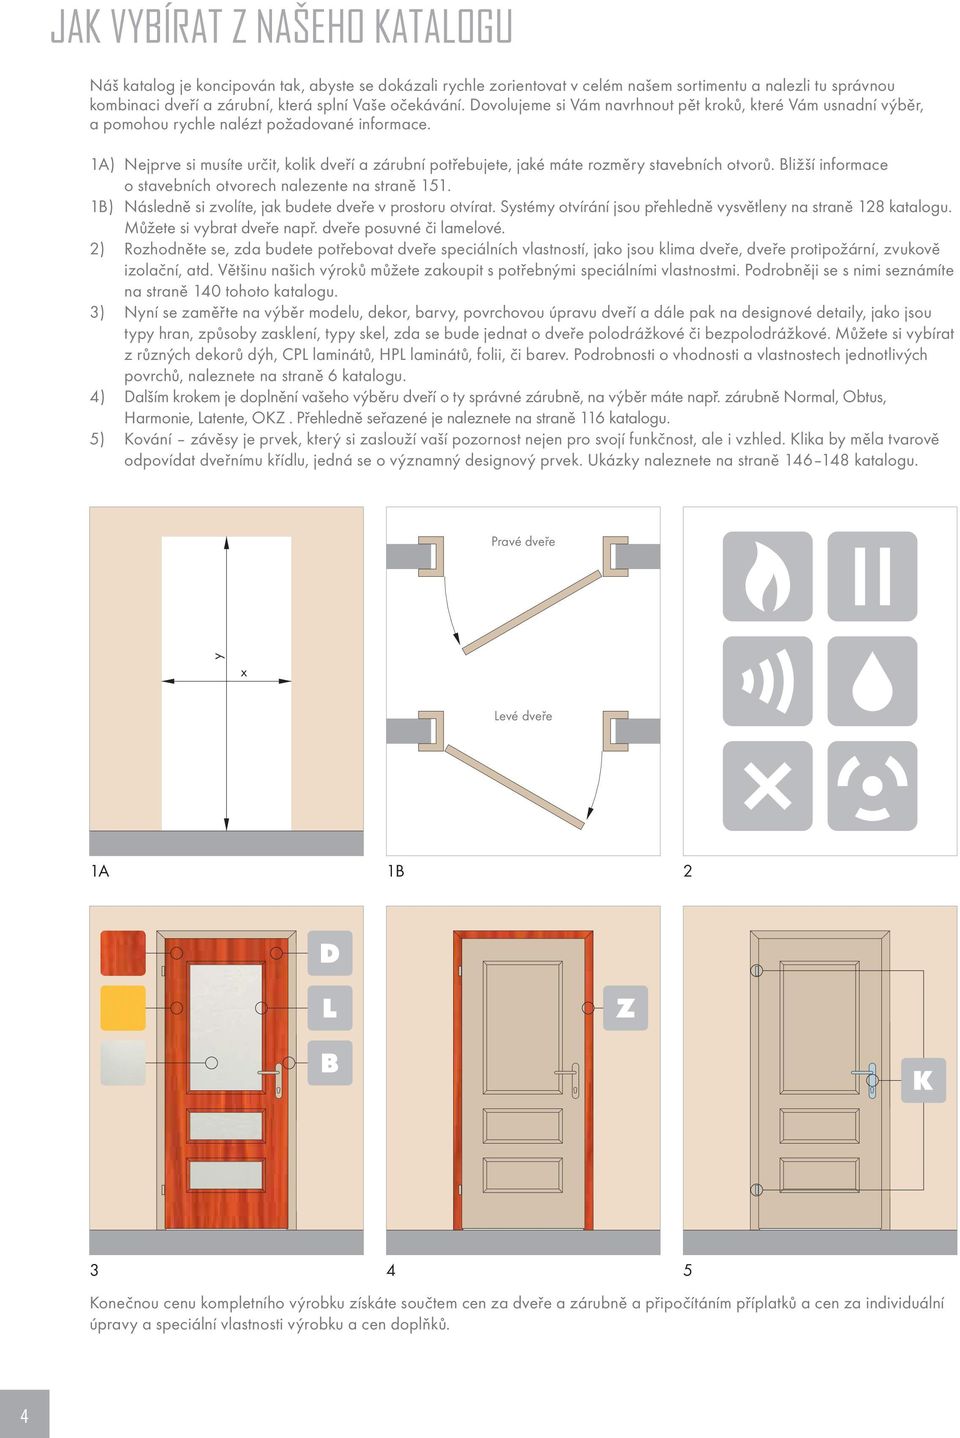 1A) Nejprve si musíte určit, kolik dveří a zárubní potřebujete, jaké máte rozměry stavebních otvorů. Bližší informace o stavebních otvorech nalezente na straně 151.